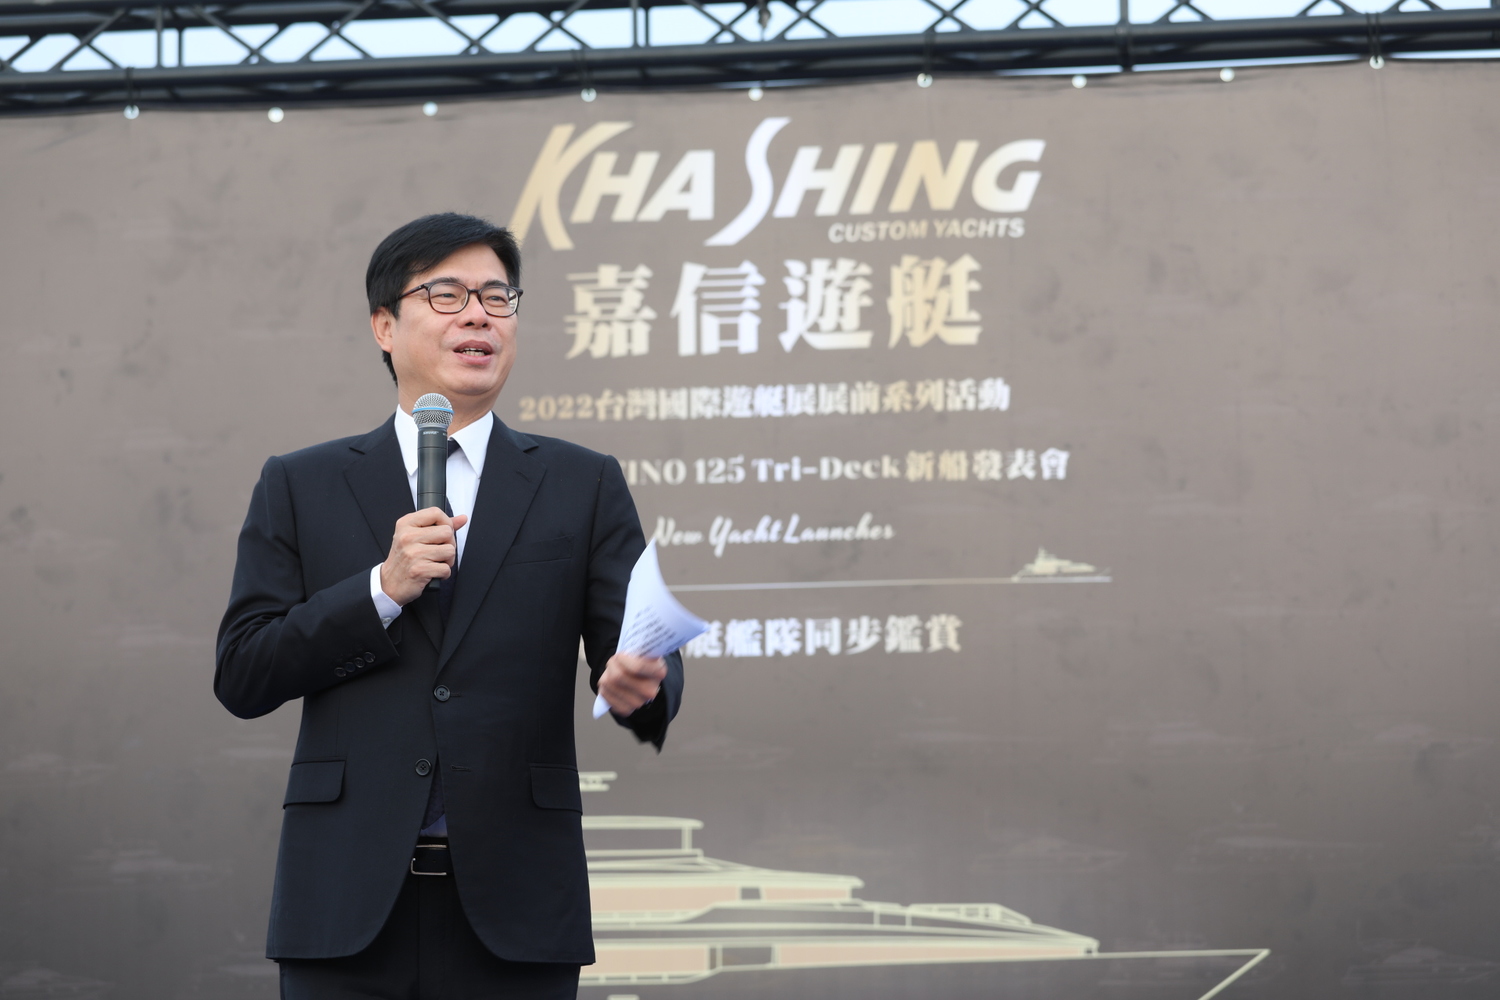 陳其邁出席新船發表會  驕傲台灣技術領先  喊出「會協助產業發展」